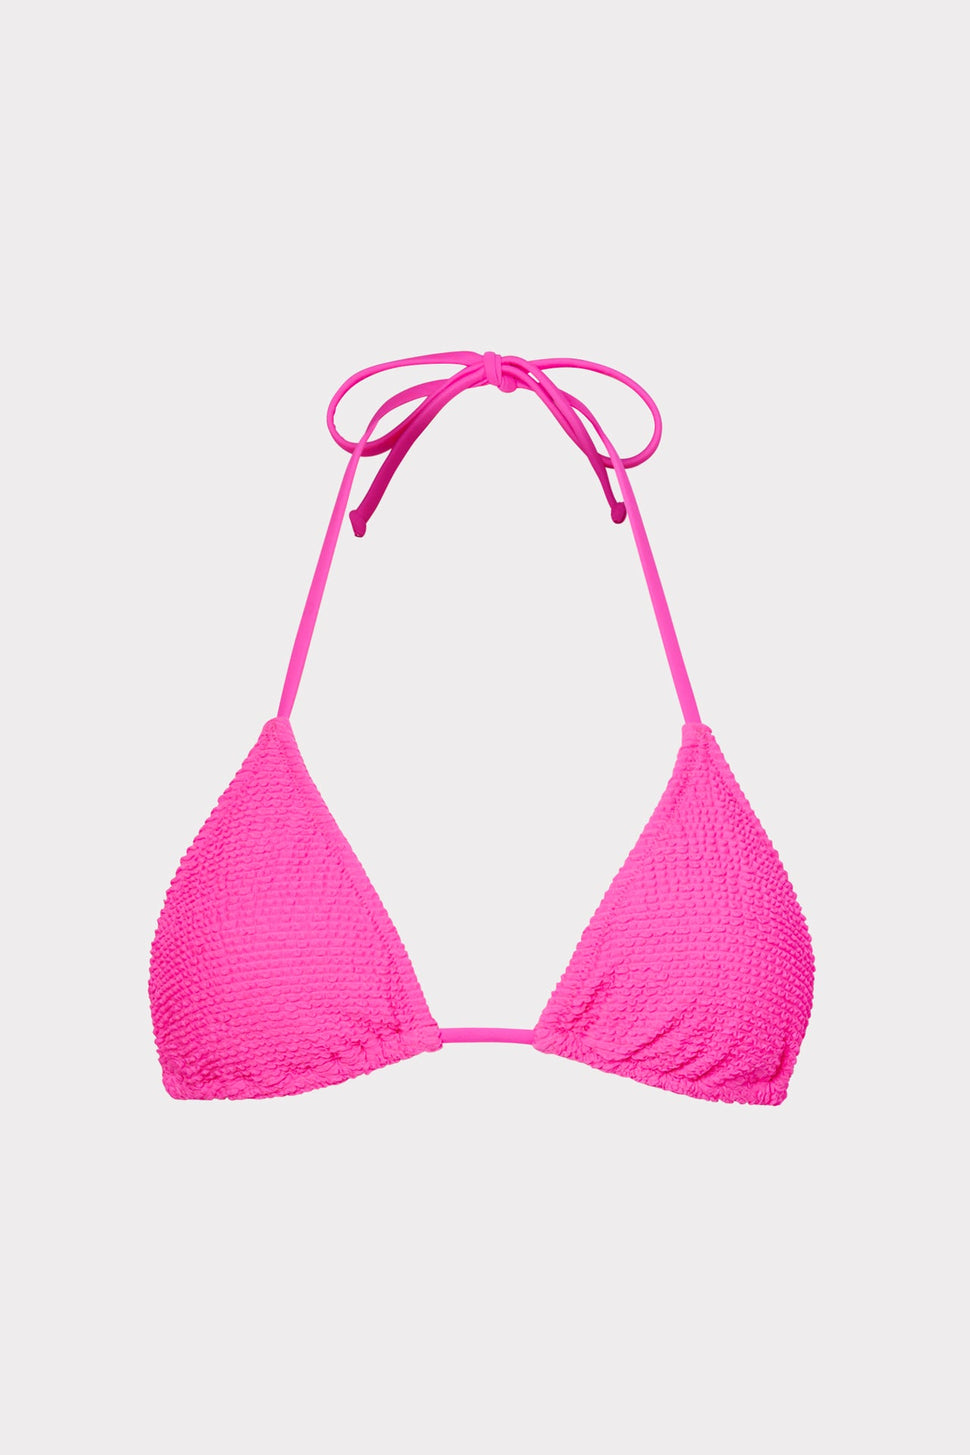 FULL TILT Textured Neon Hot Pink Bralette Bikini Top